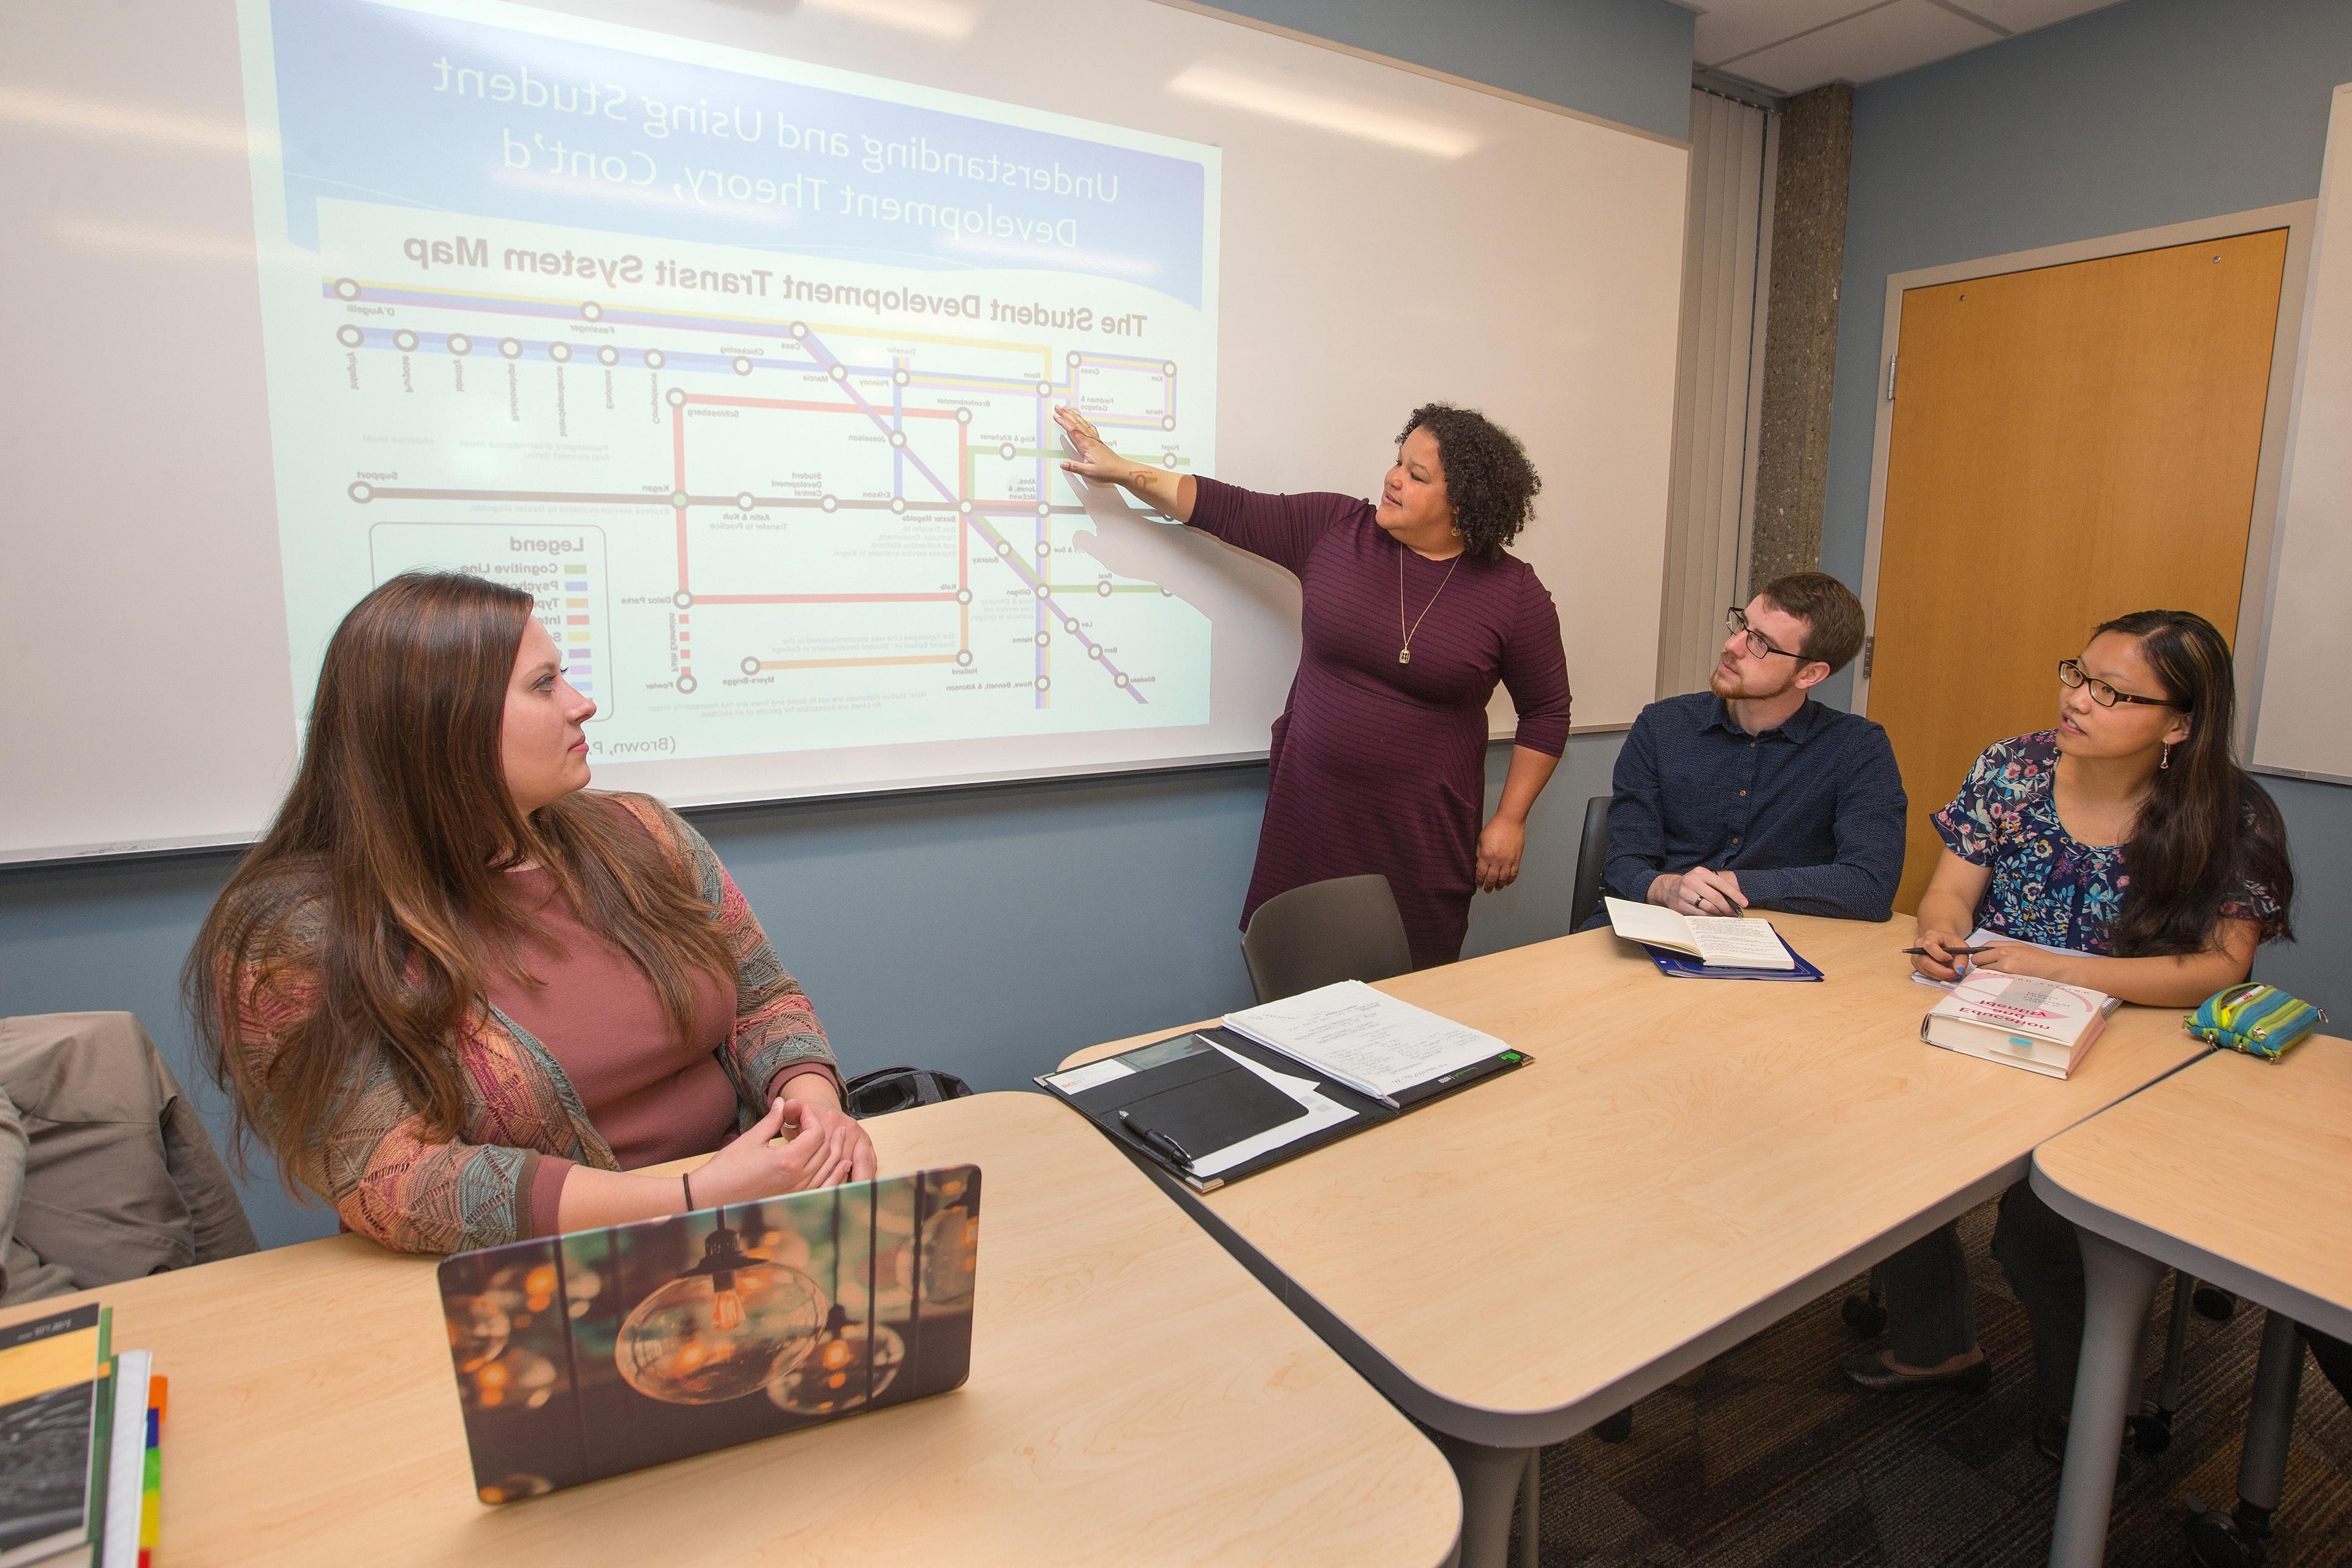 一位BGSU教授站在突出显示学生发展理论的屏幕前，硕士课程和教学项目的两名女学生和一名男学生在旁边看着.